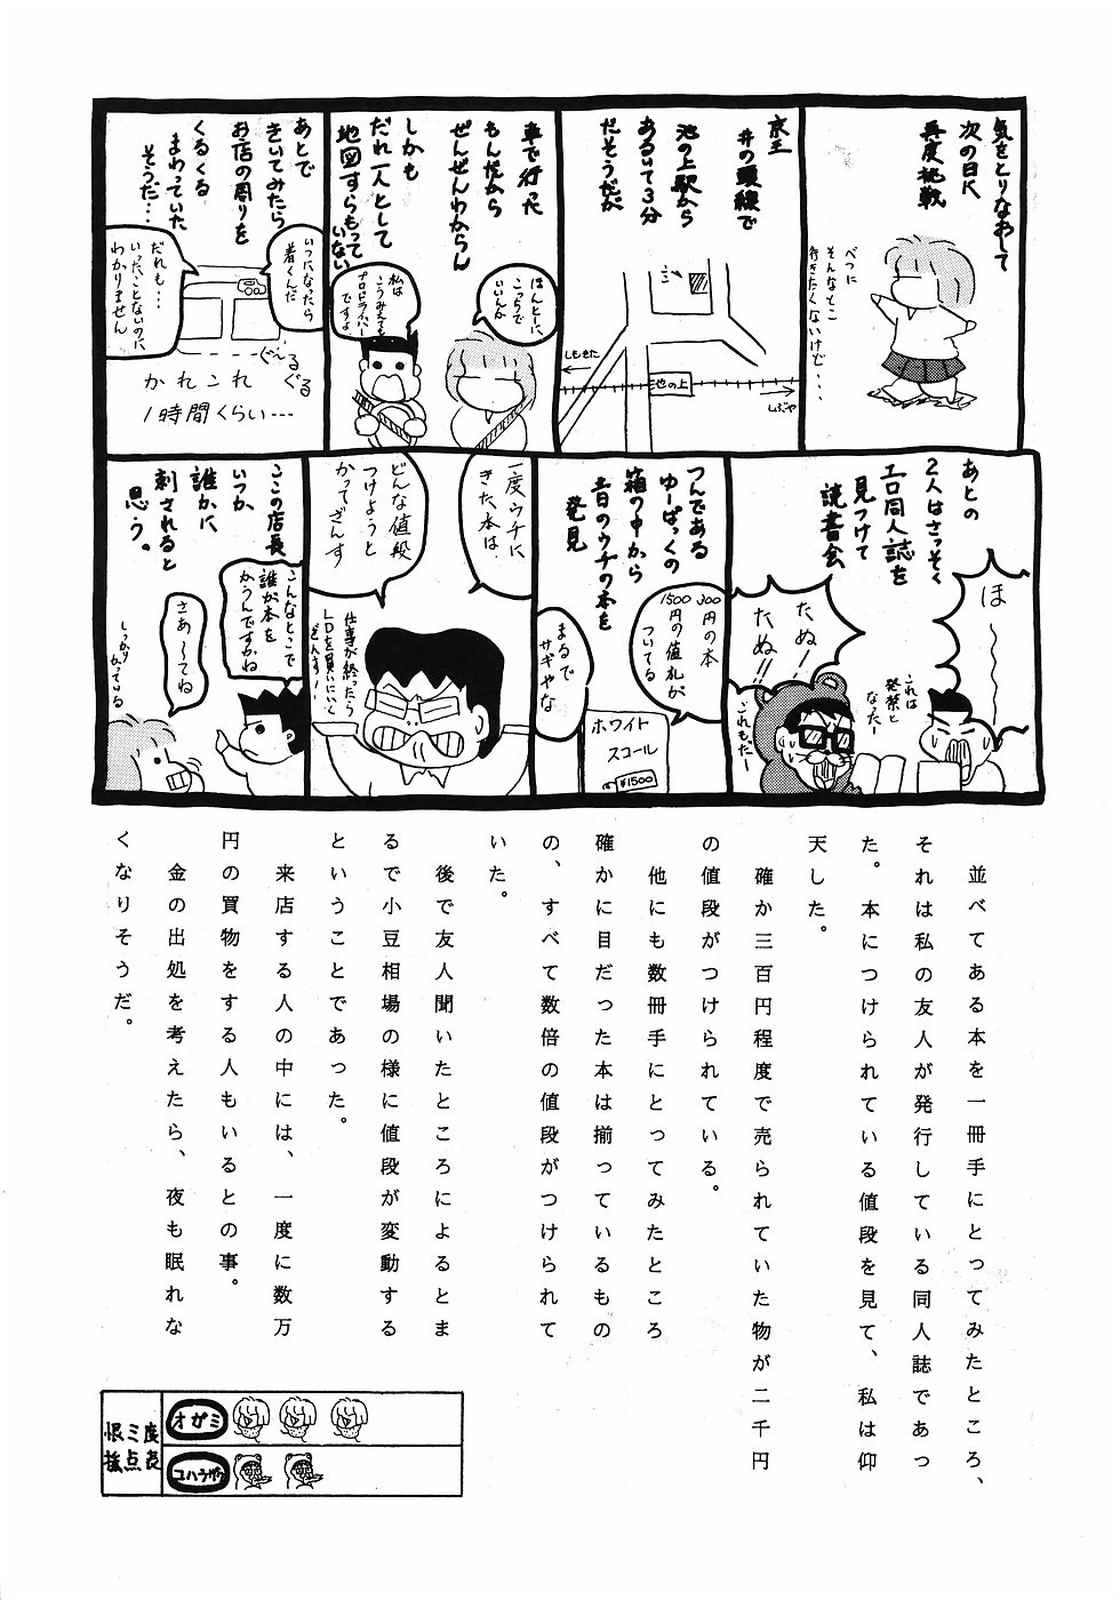 [美色アカデミィー＆関東司組 (Various)] Bi-shoku Academy Vol.1 (Various) page 38 full